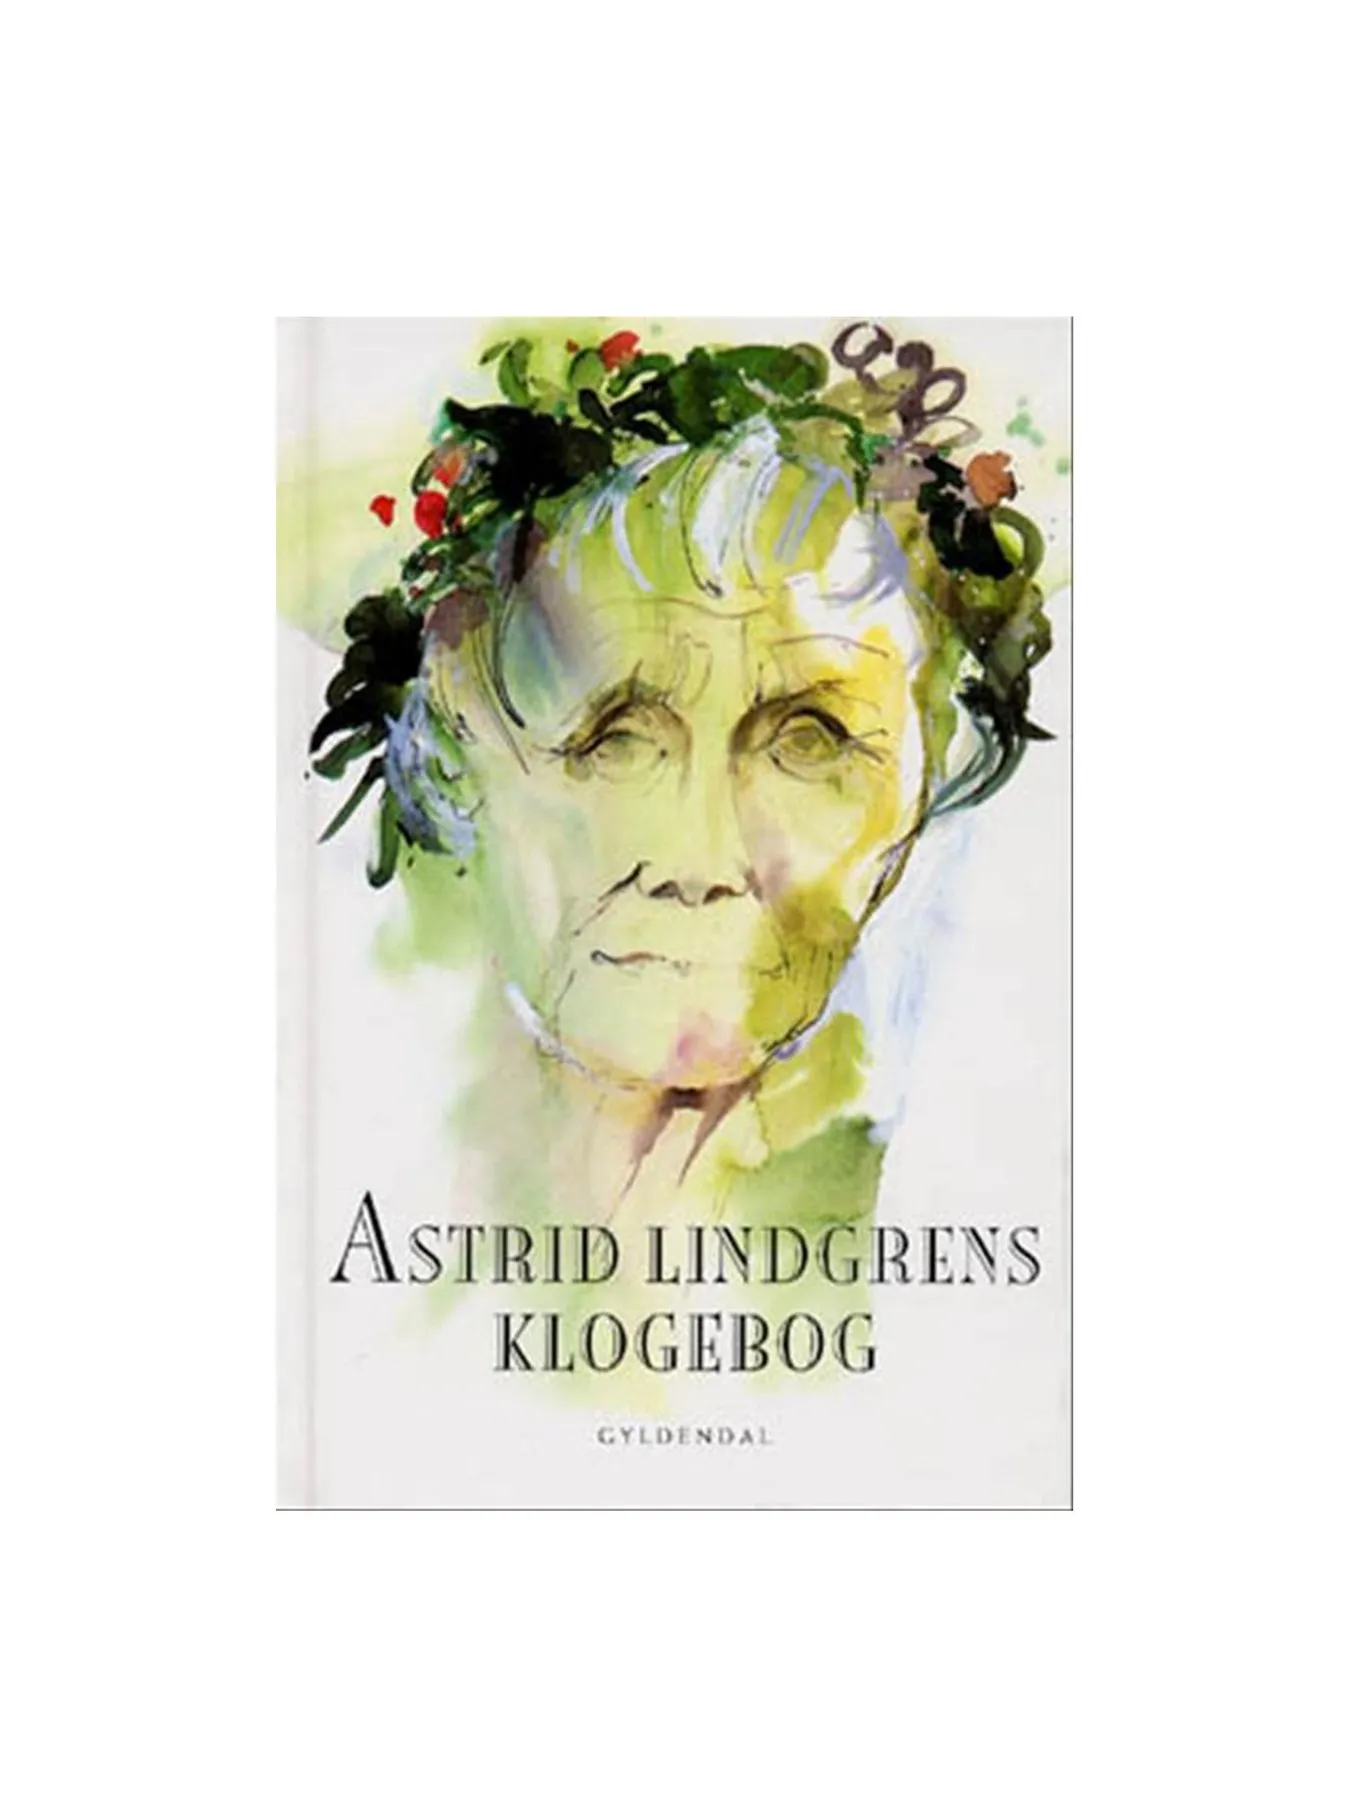 Astrid Lindgrens klogebog (Dänisch)